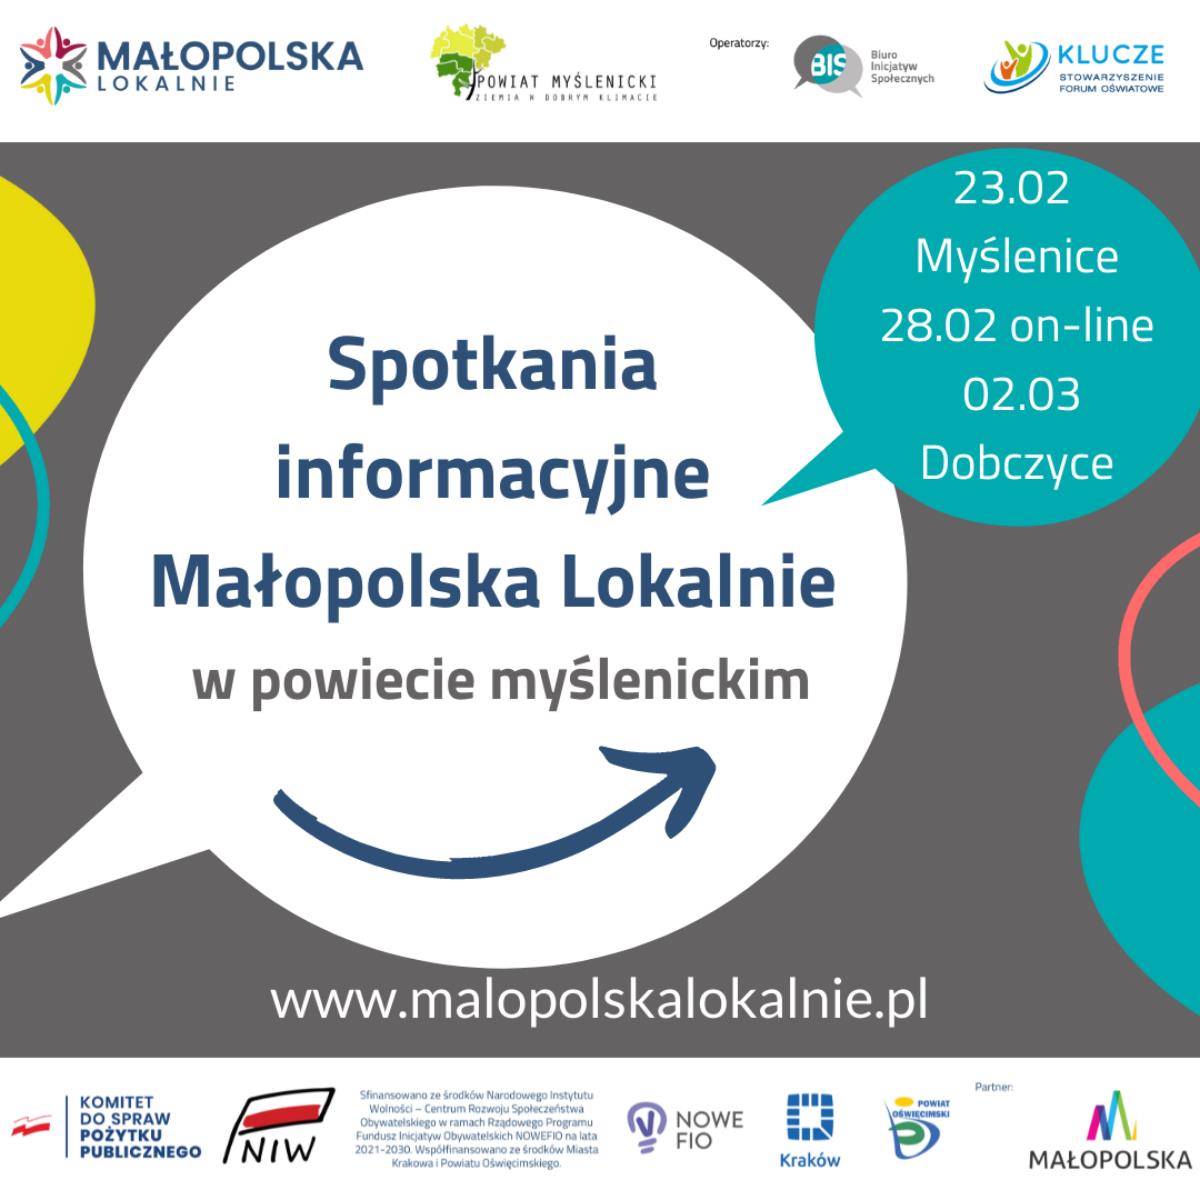 Spotkania informacyjne dotyczące konkursu grantowego Małopolska Lokalnie